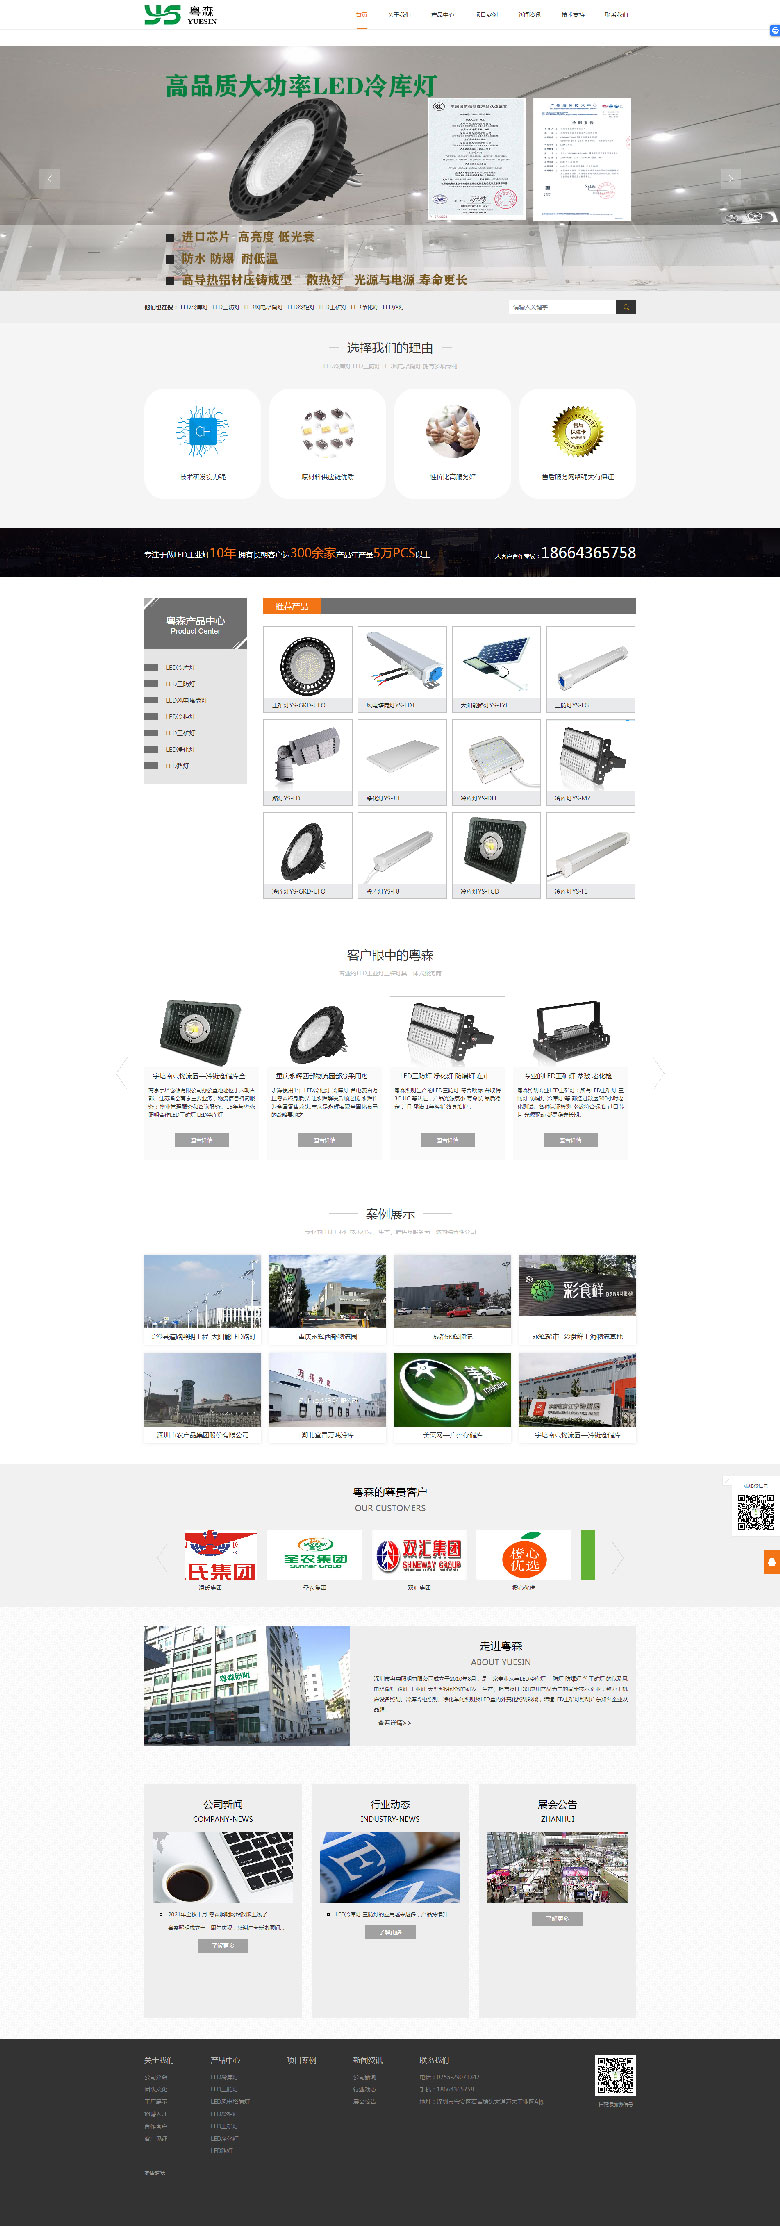 深圳网站建设案例之LED照明企业网站